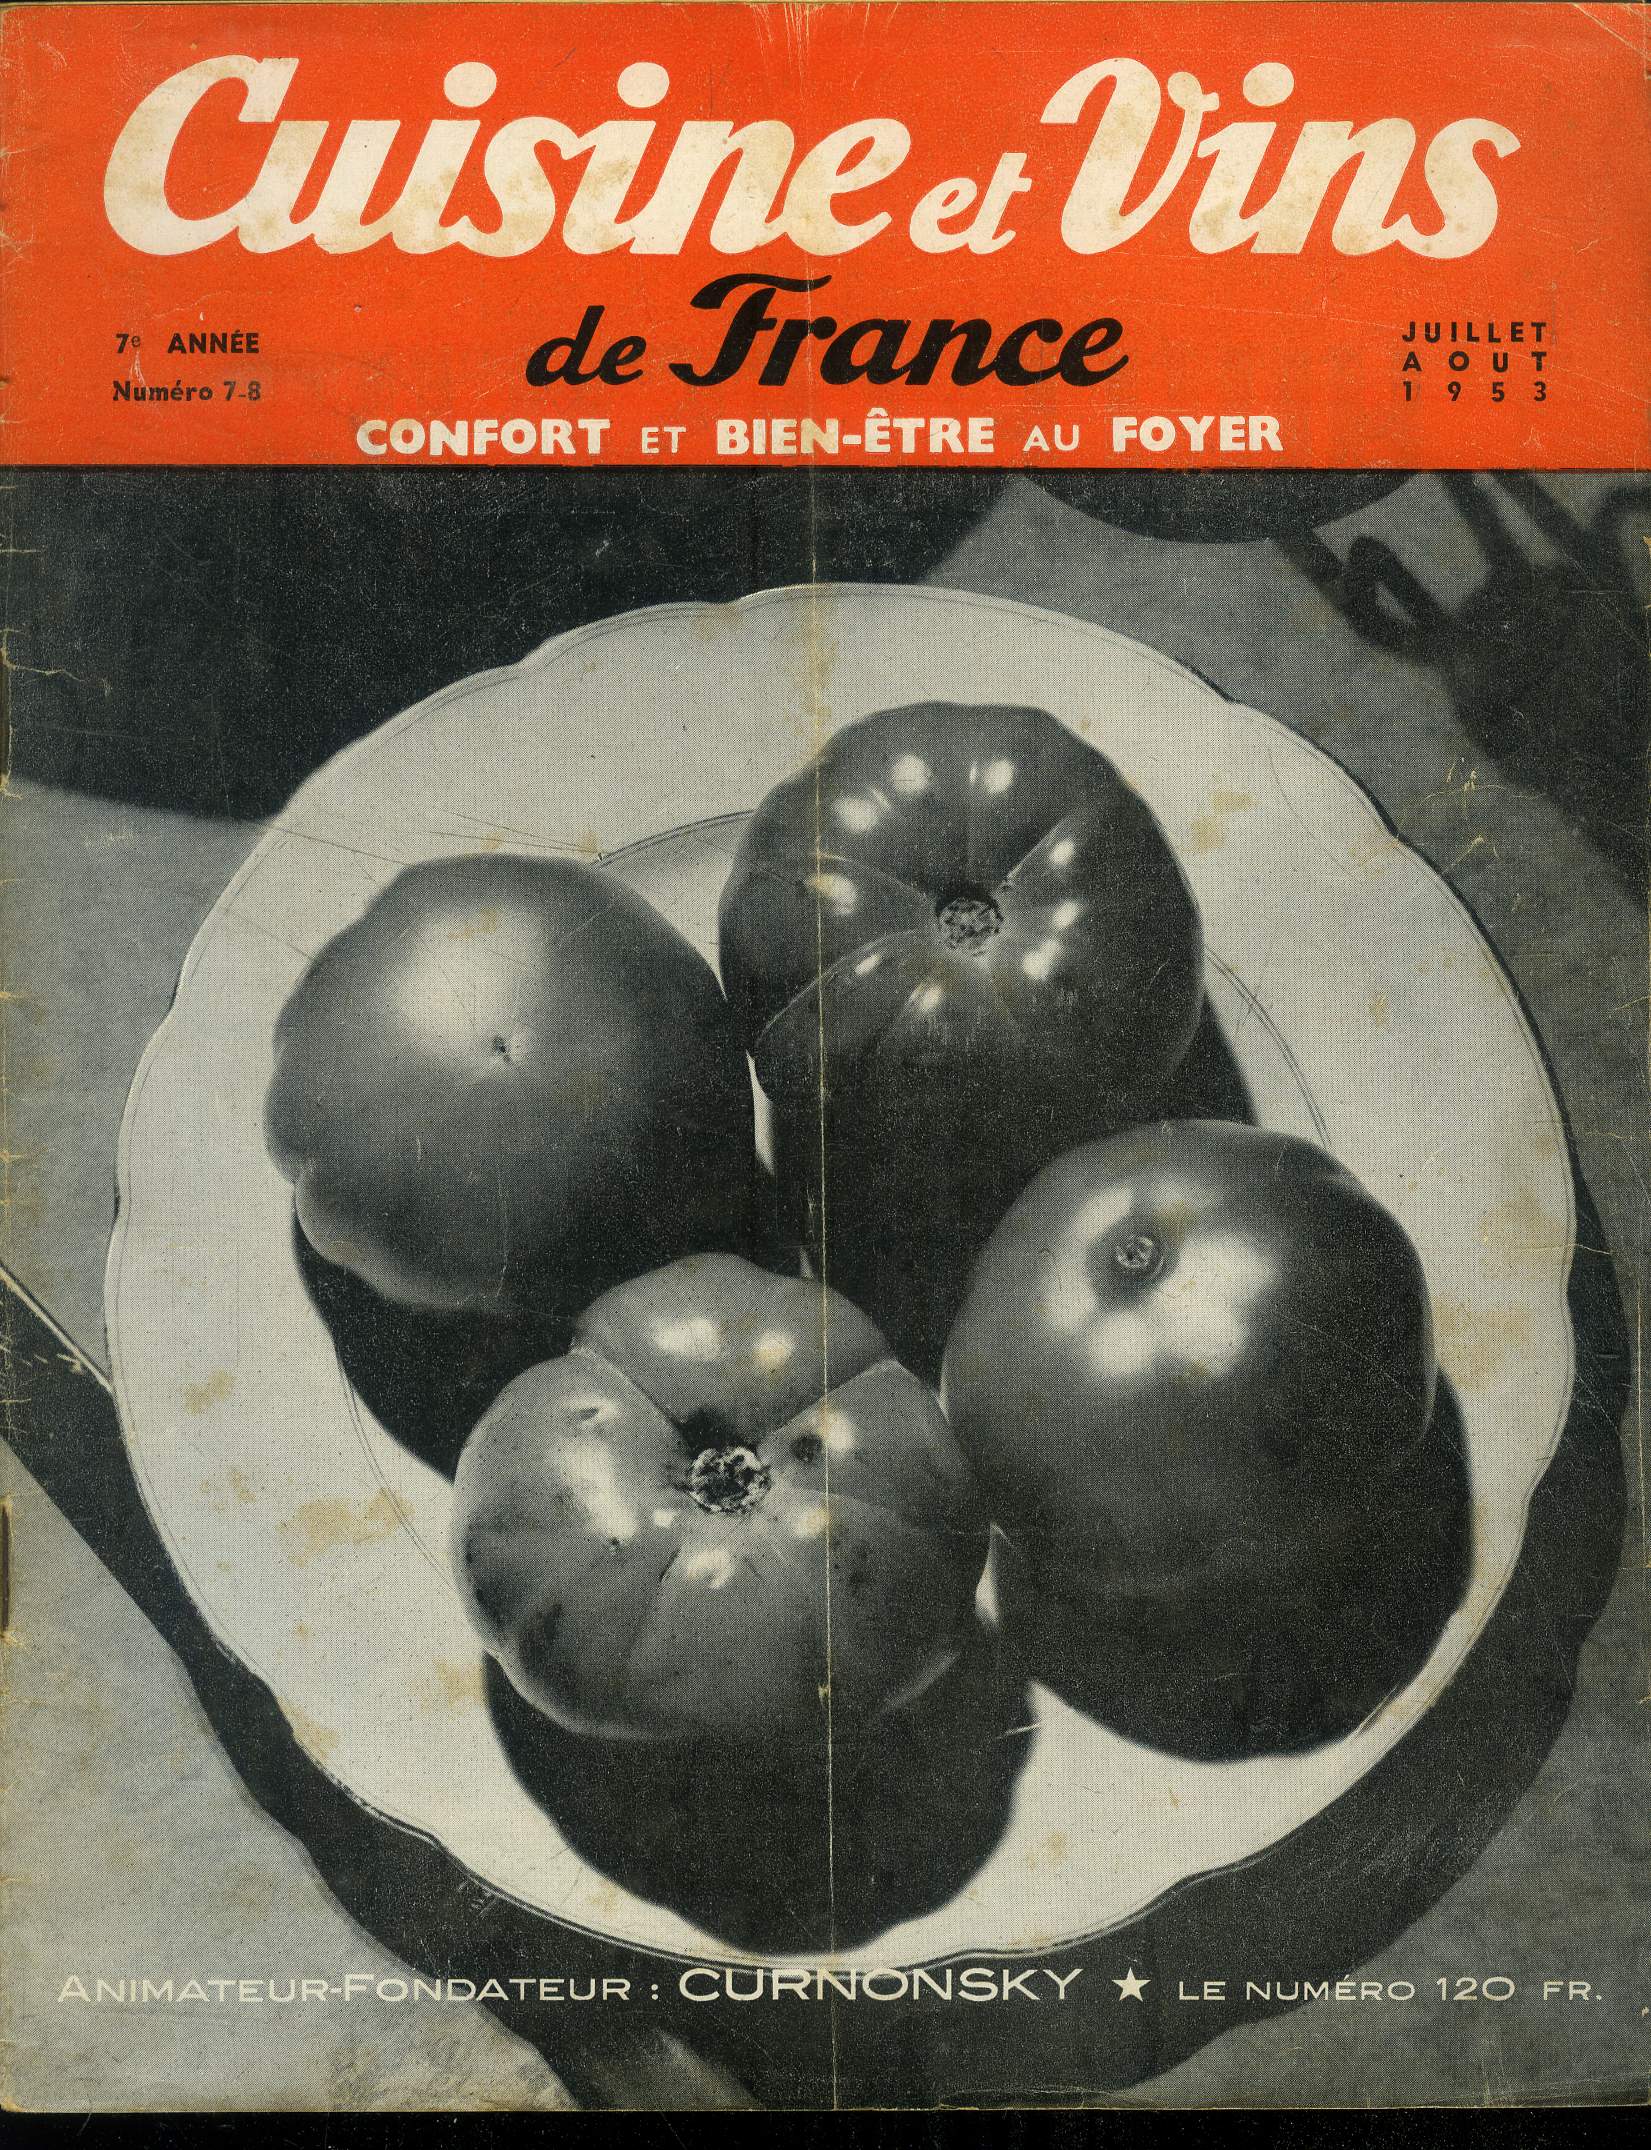 Cuisine et vins de France - Confort et bien-tre au foyer - 7e anne - n 7 - 8 - Juillet, Aot 1953 : Un menu de grande cusiine : Fonds d'artichaut des gourmets - jambon de prague glac - pure de champignons - compote d'abricots au cassis,etc.